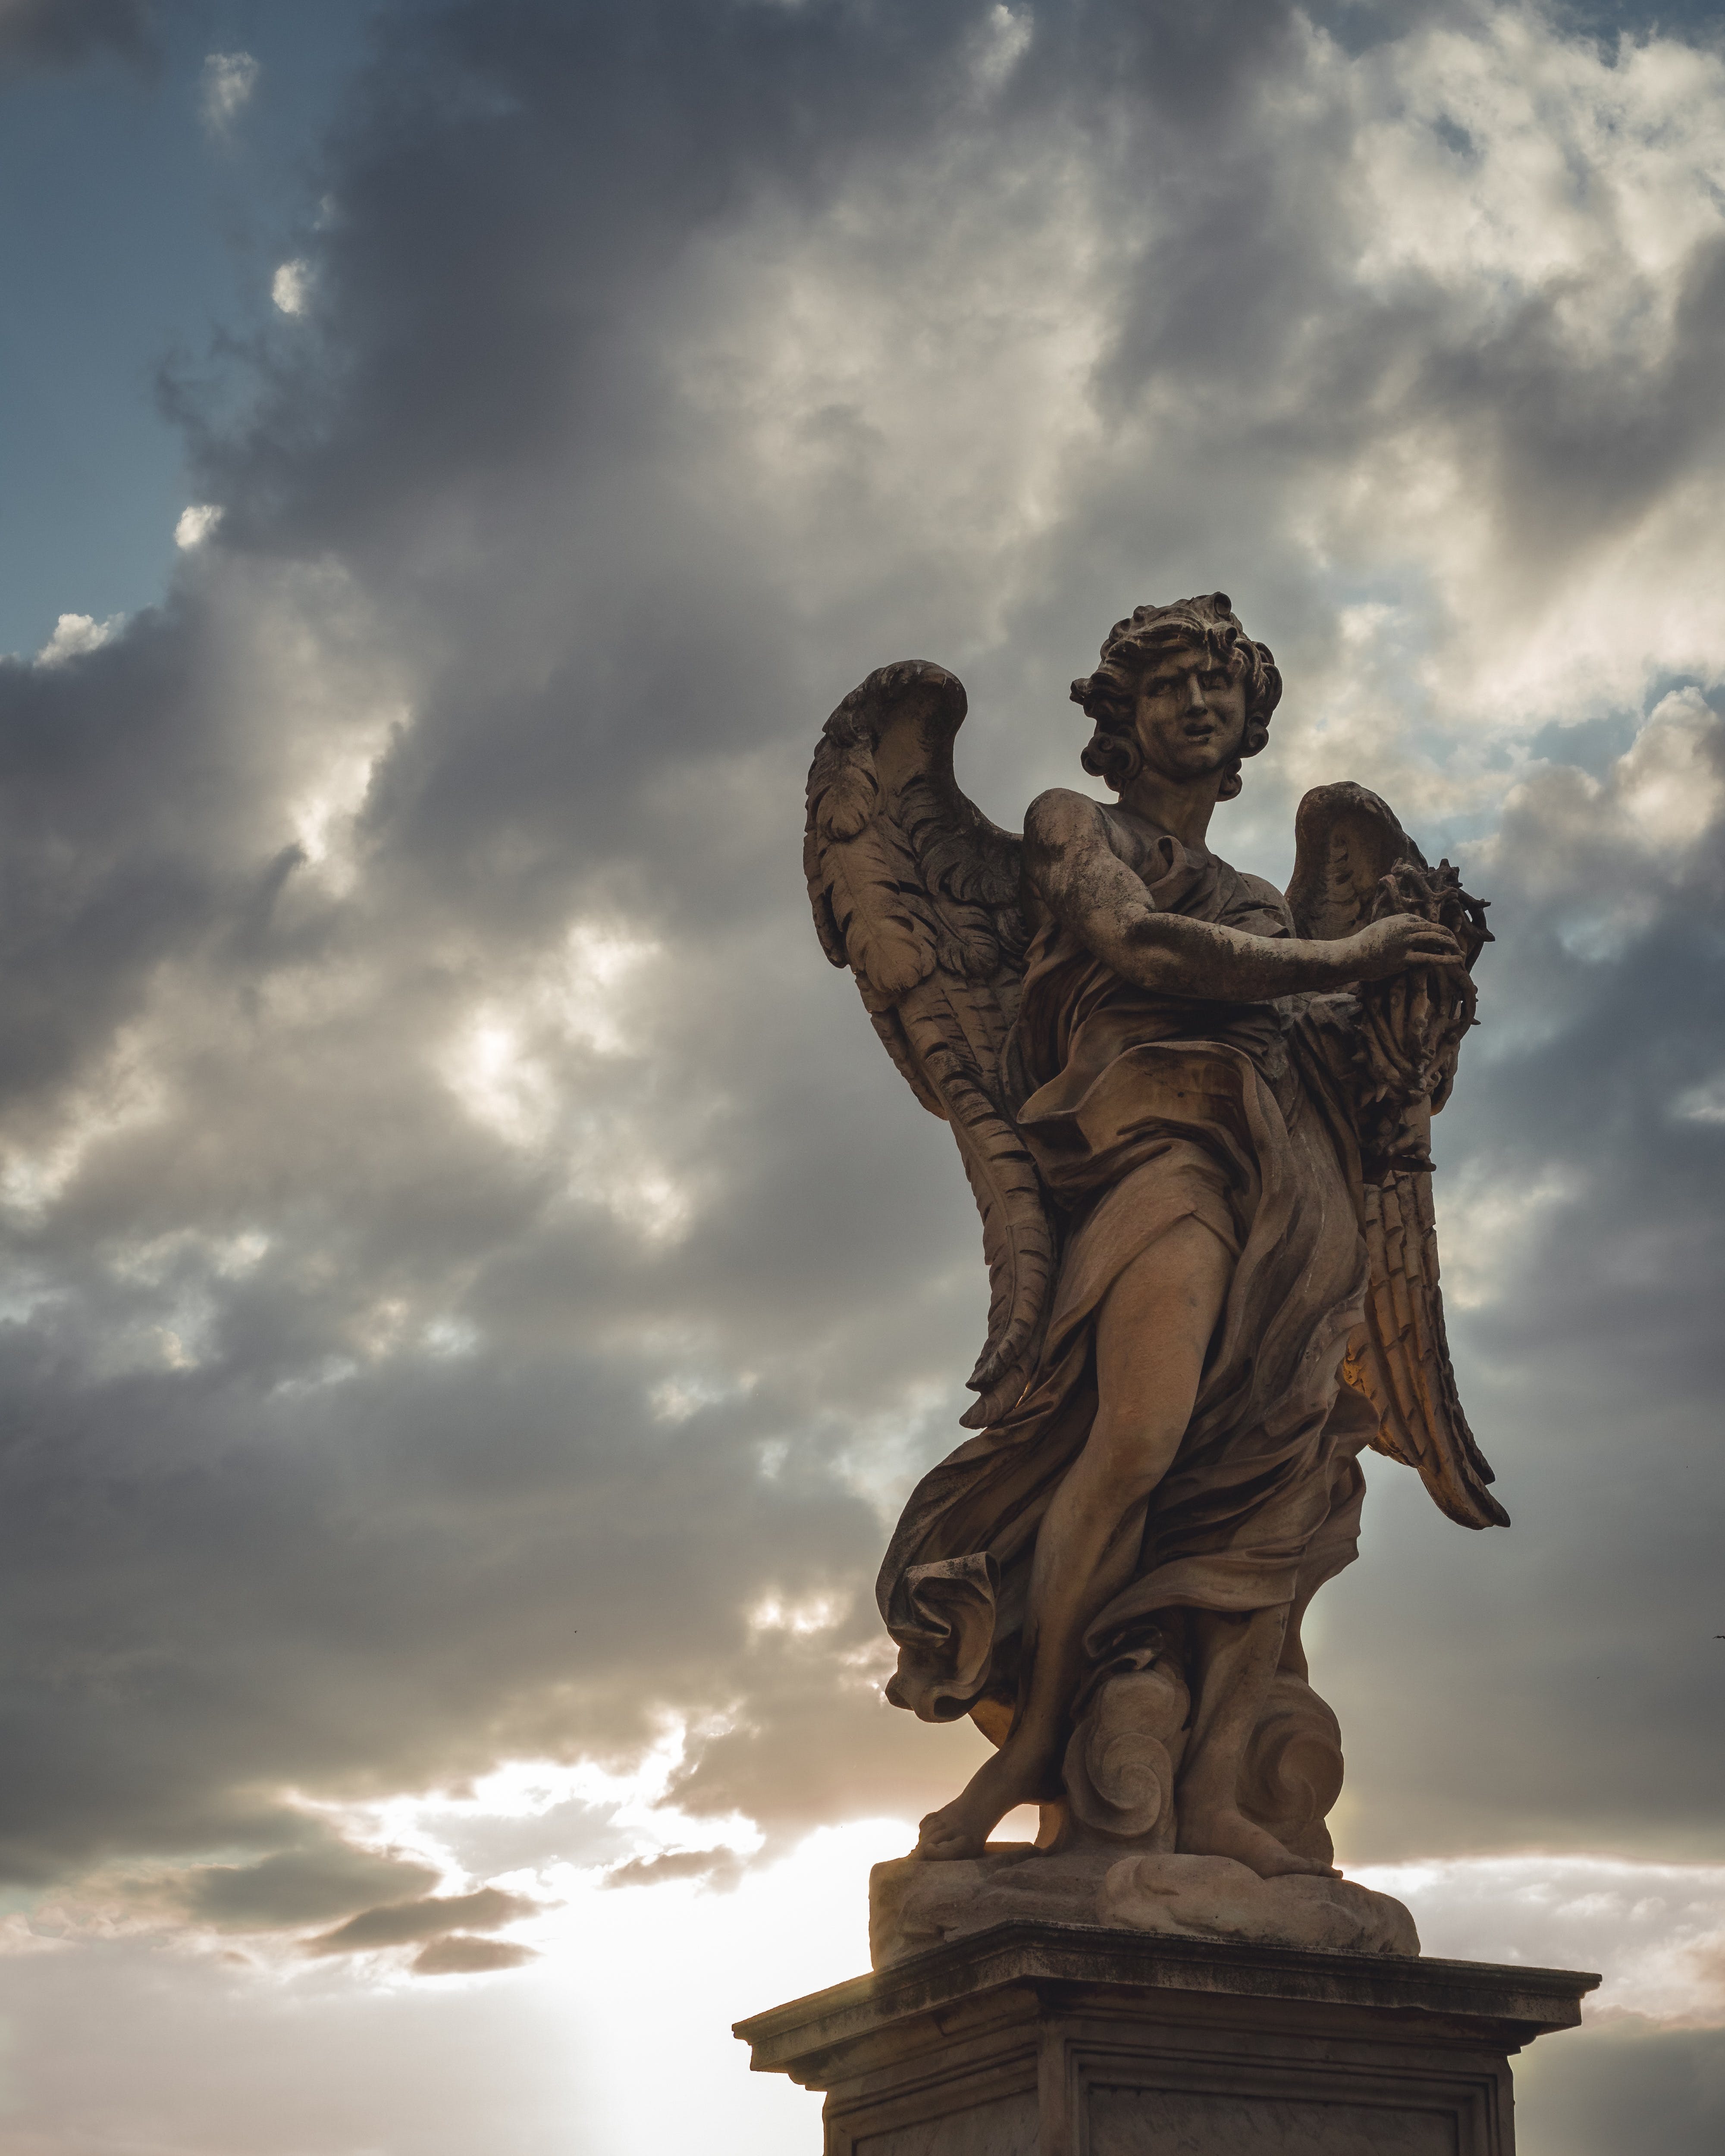  Engel Hintergrundbild 4000x5000. Geflügelte Menschliche Statue · Kostenloses Stock Foto